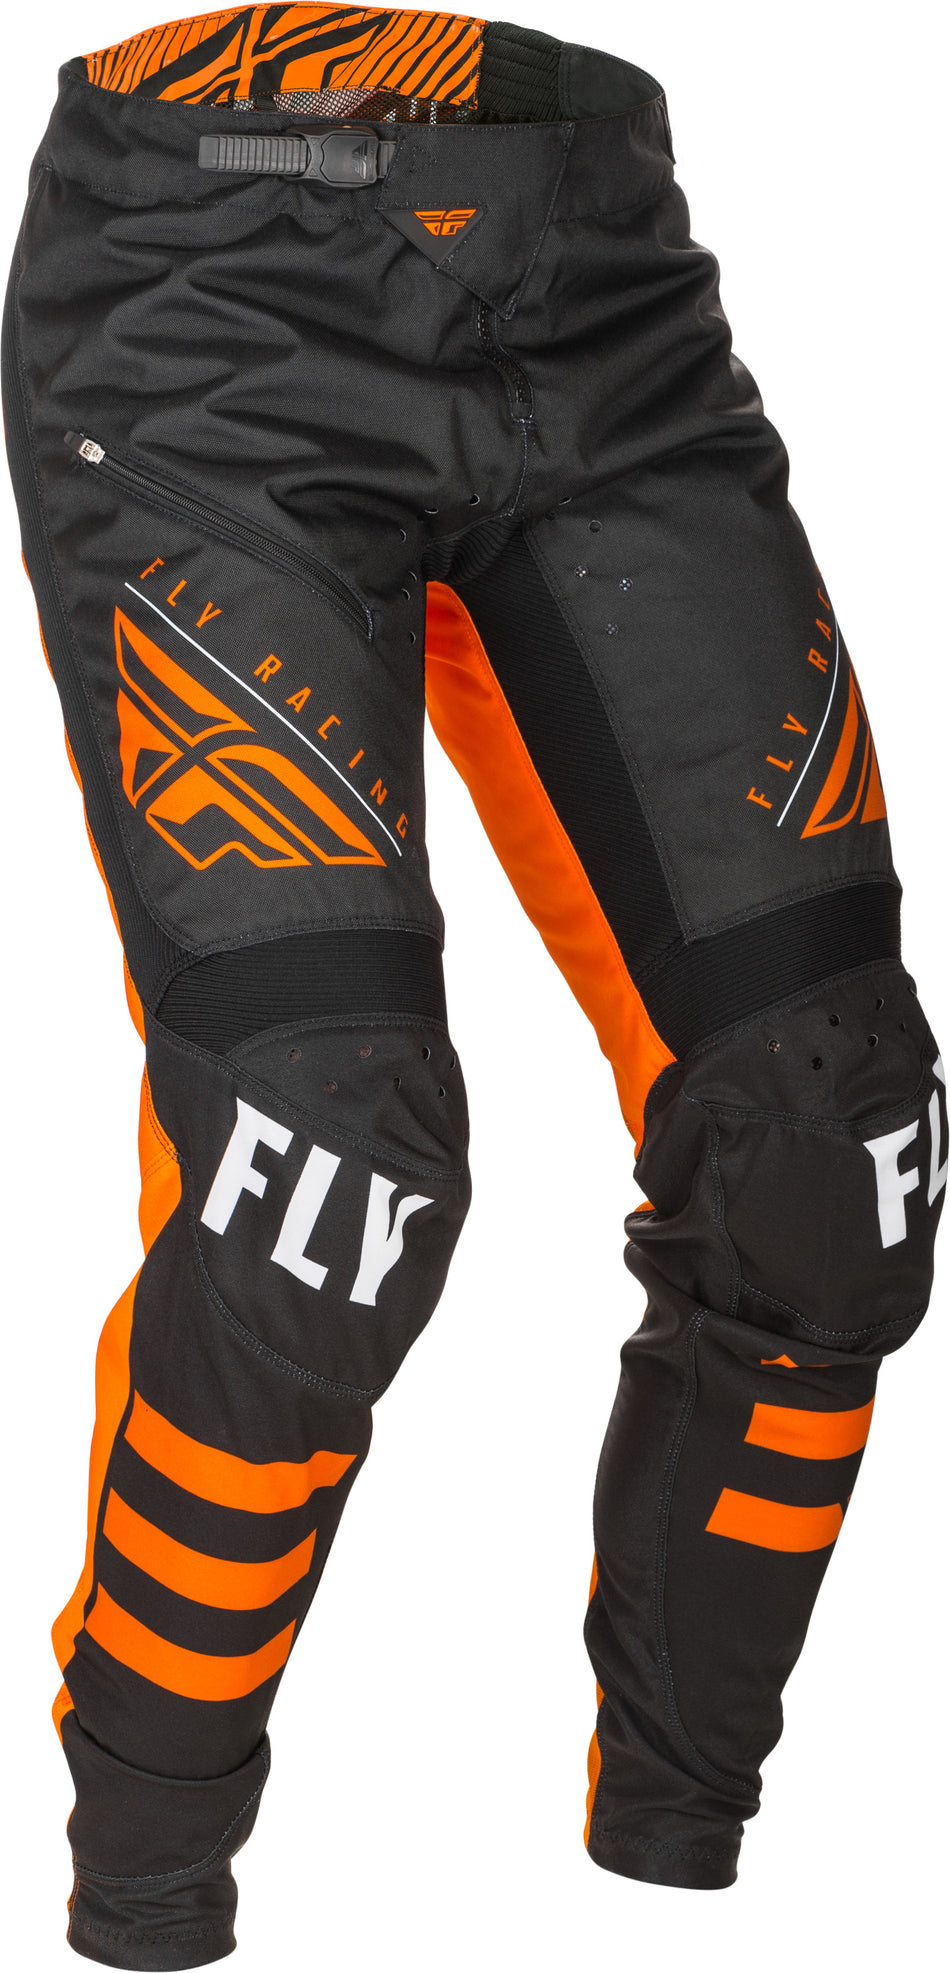 FLY RACING Kinetic Bicycle Pants Black/Orange Sz 38 373-04738